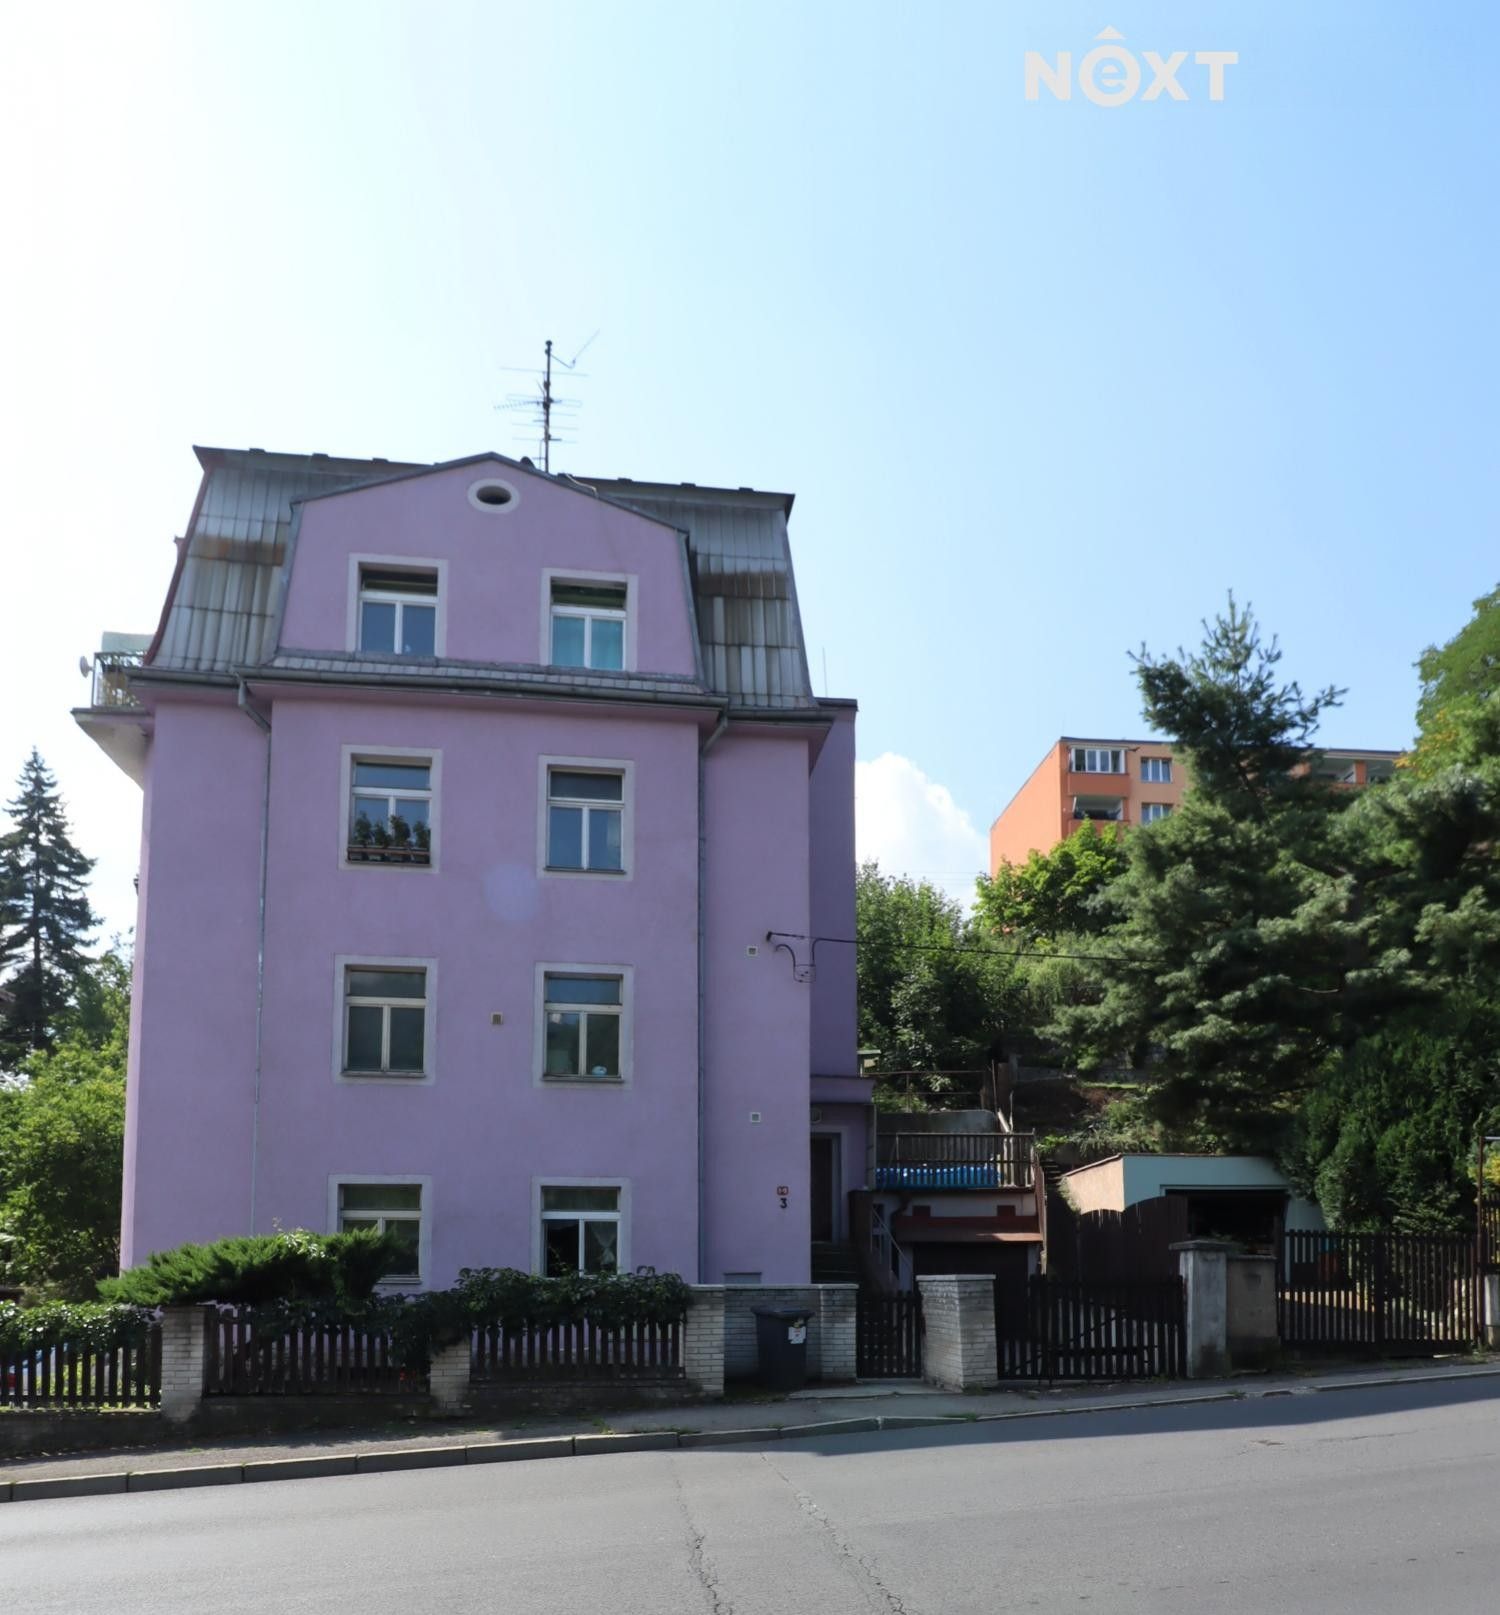 Činžovní domy, Teplárenská,Bohatice,Karlovy Vary, 36004, 420 m²